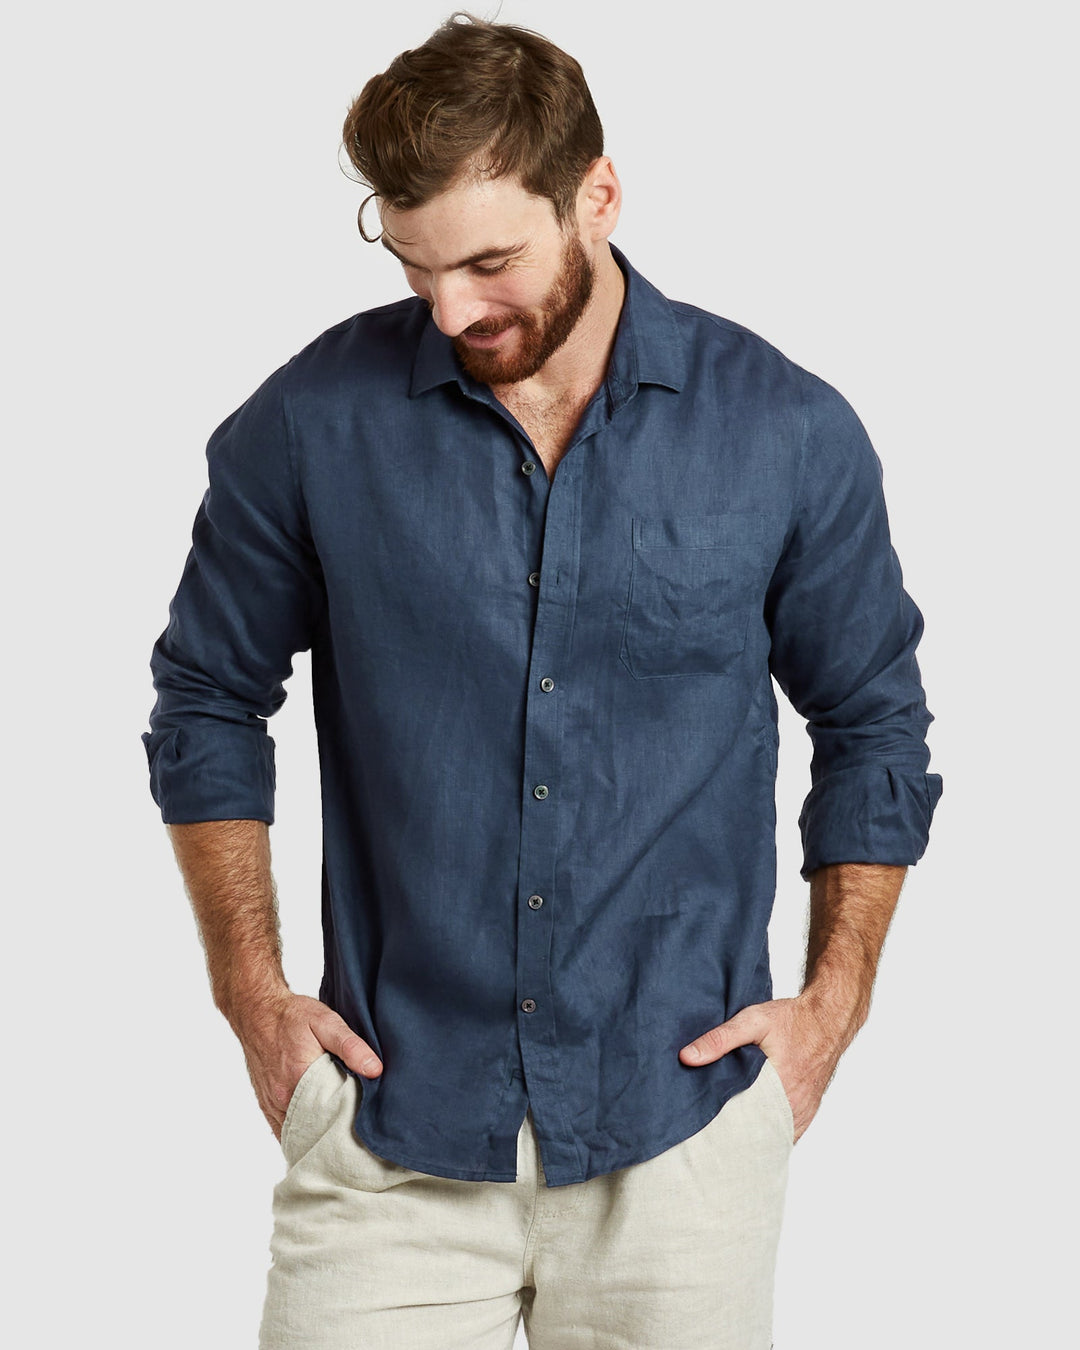 Tulum-Casual Navy Linen Shirt Long Sleeve